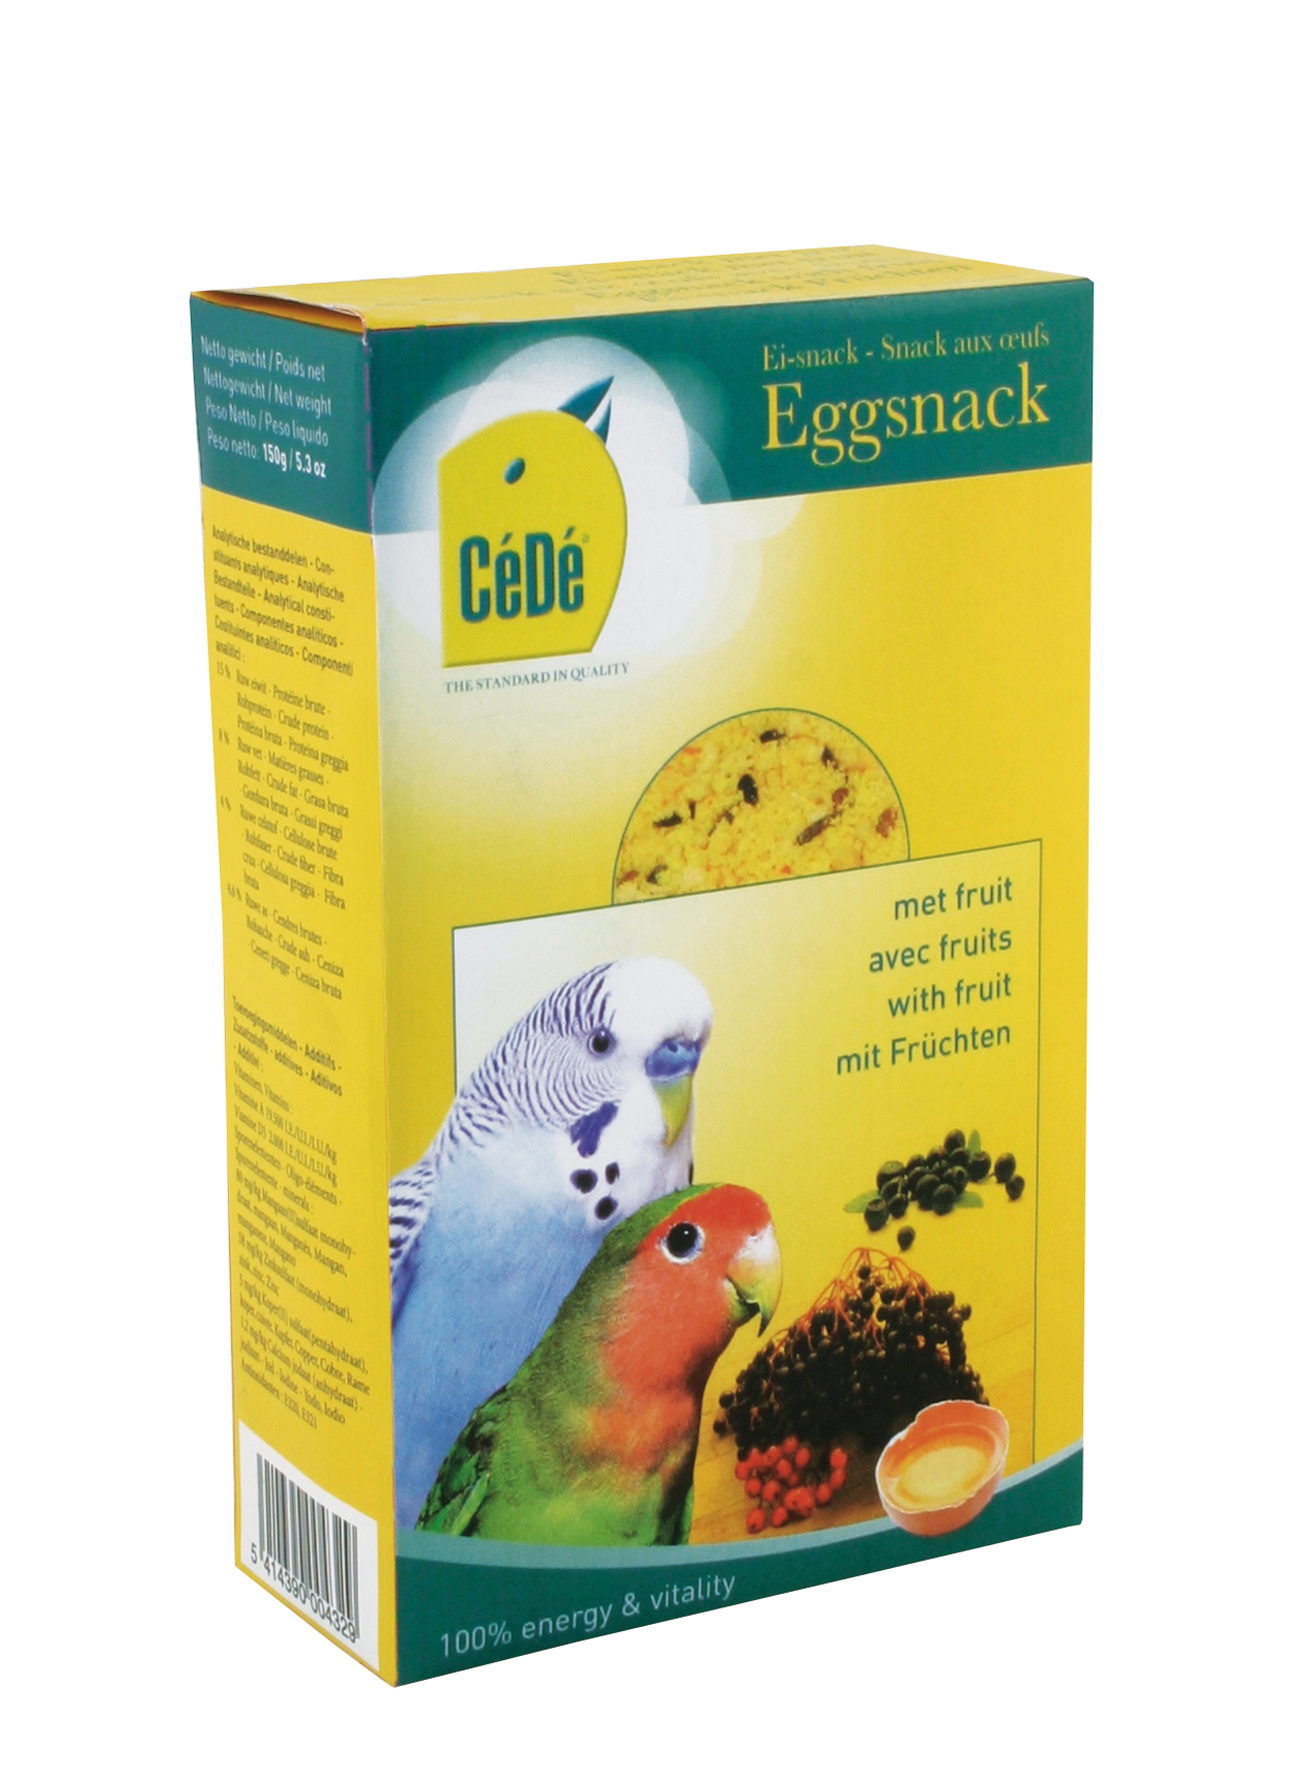 Cédé egg snack parakeet fruits - Product shot